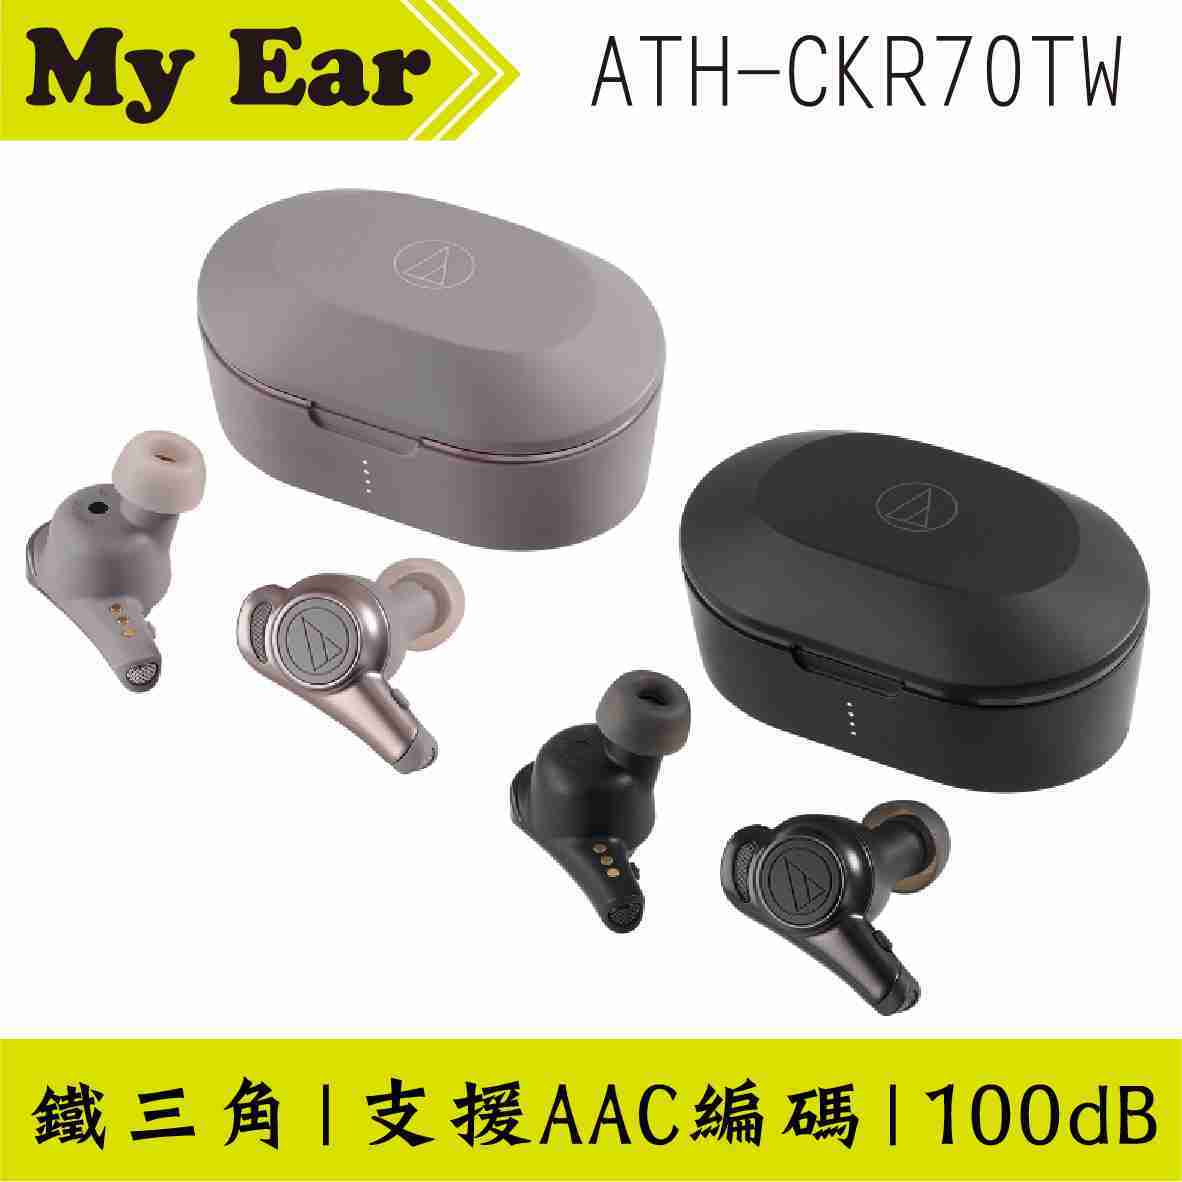 鐵三角 ATH-CKR70TW 可單耳使用 真無線 藍芽 耳機 | My Ear 耳機專門店